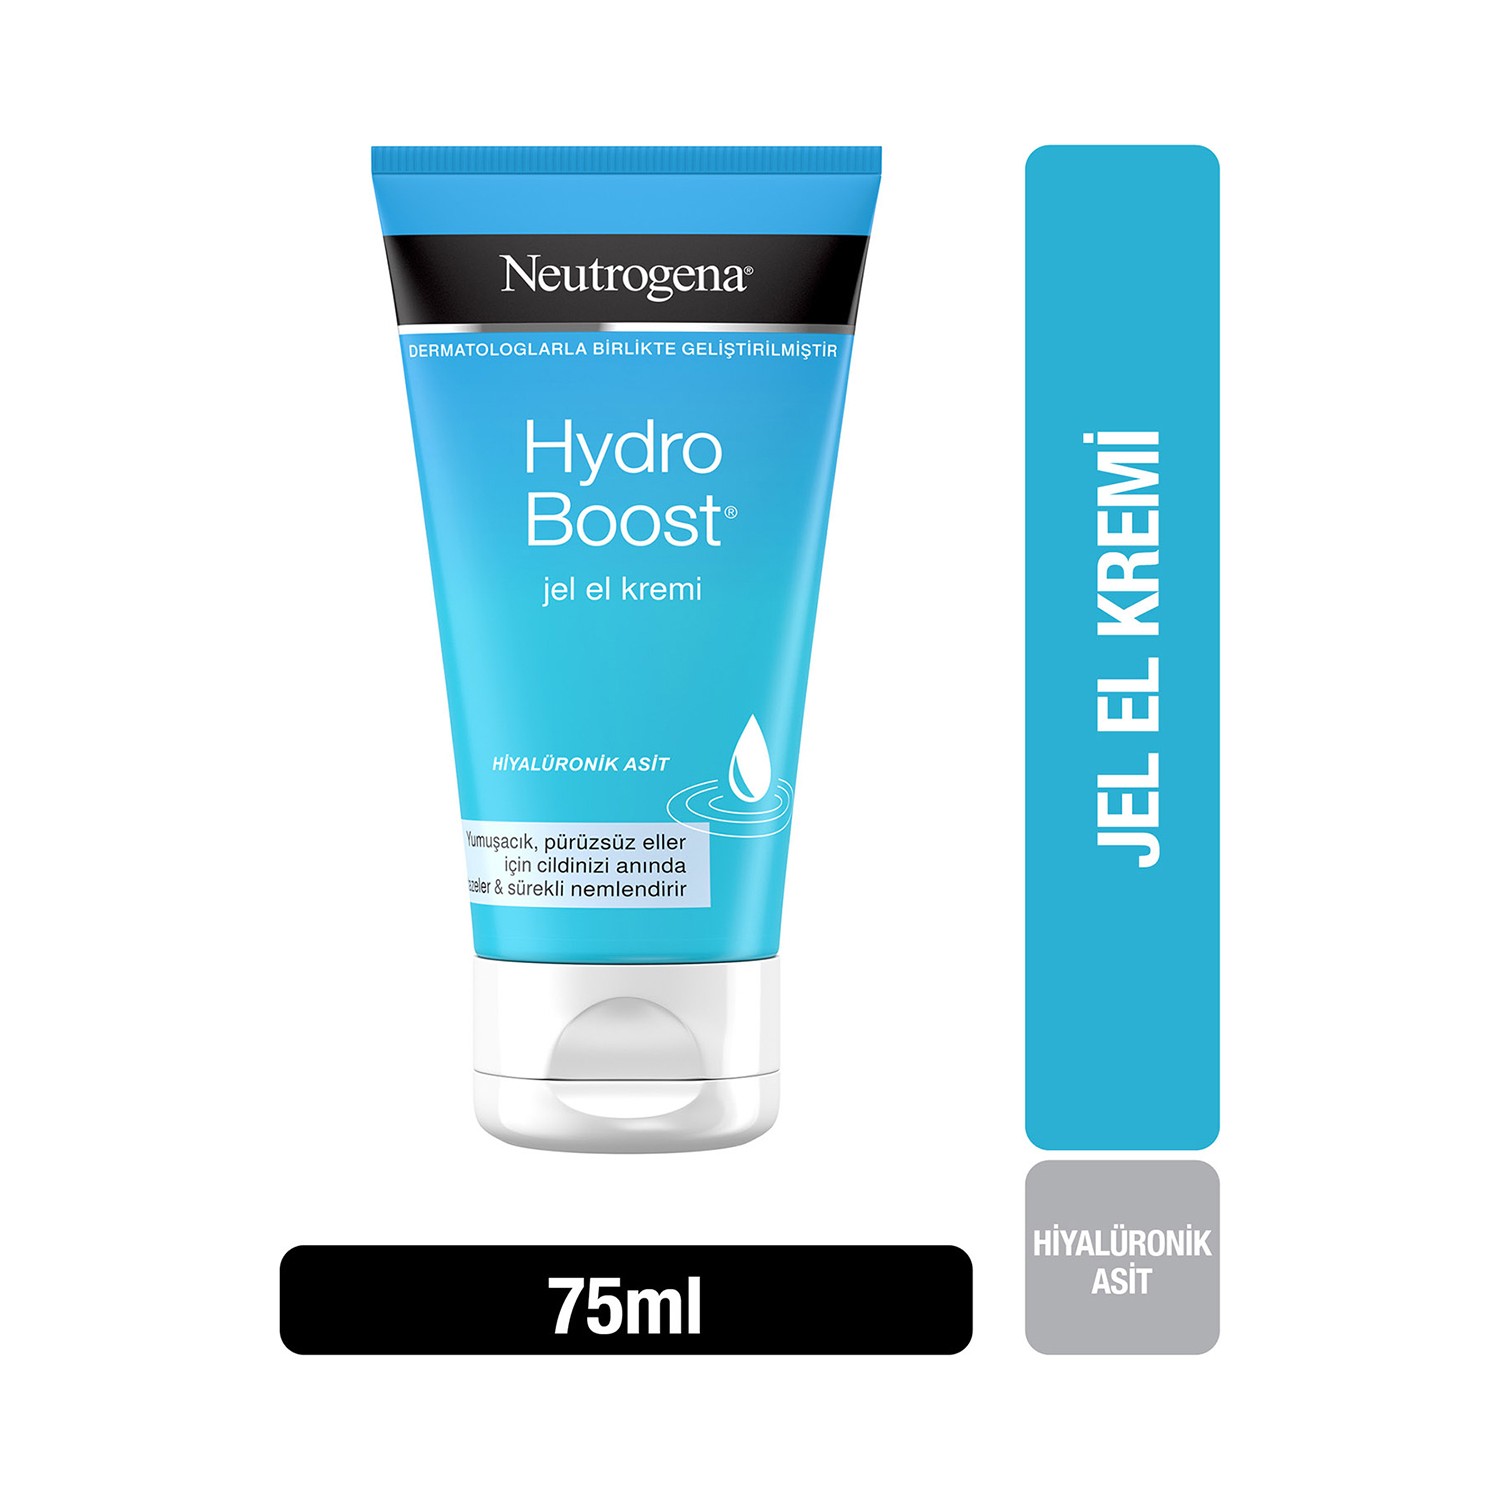 Гель-крем для рук Neutrogena Hydro Boost, 75 мл neutrogena hydro boost awakening eye cream 15ml